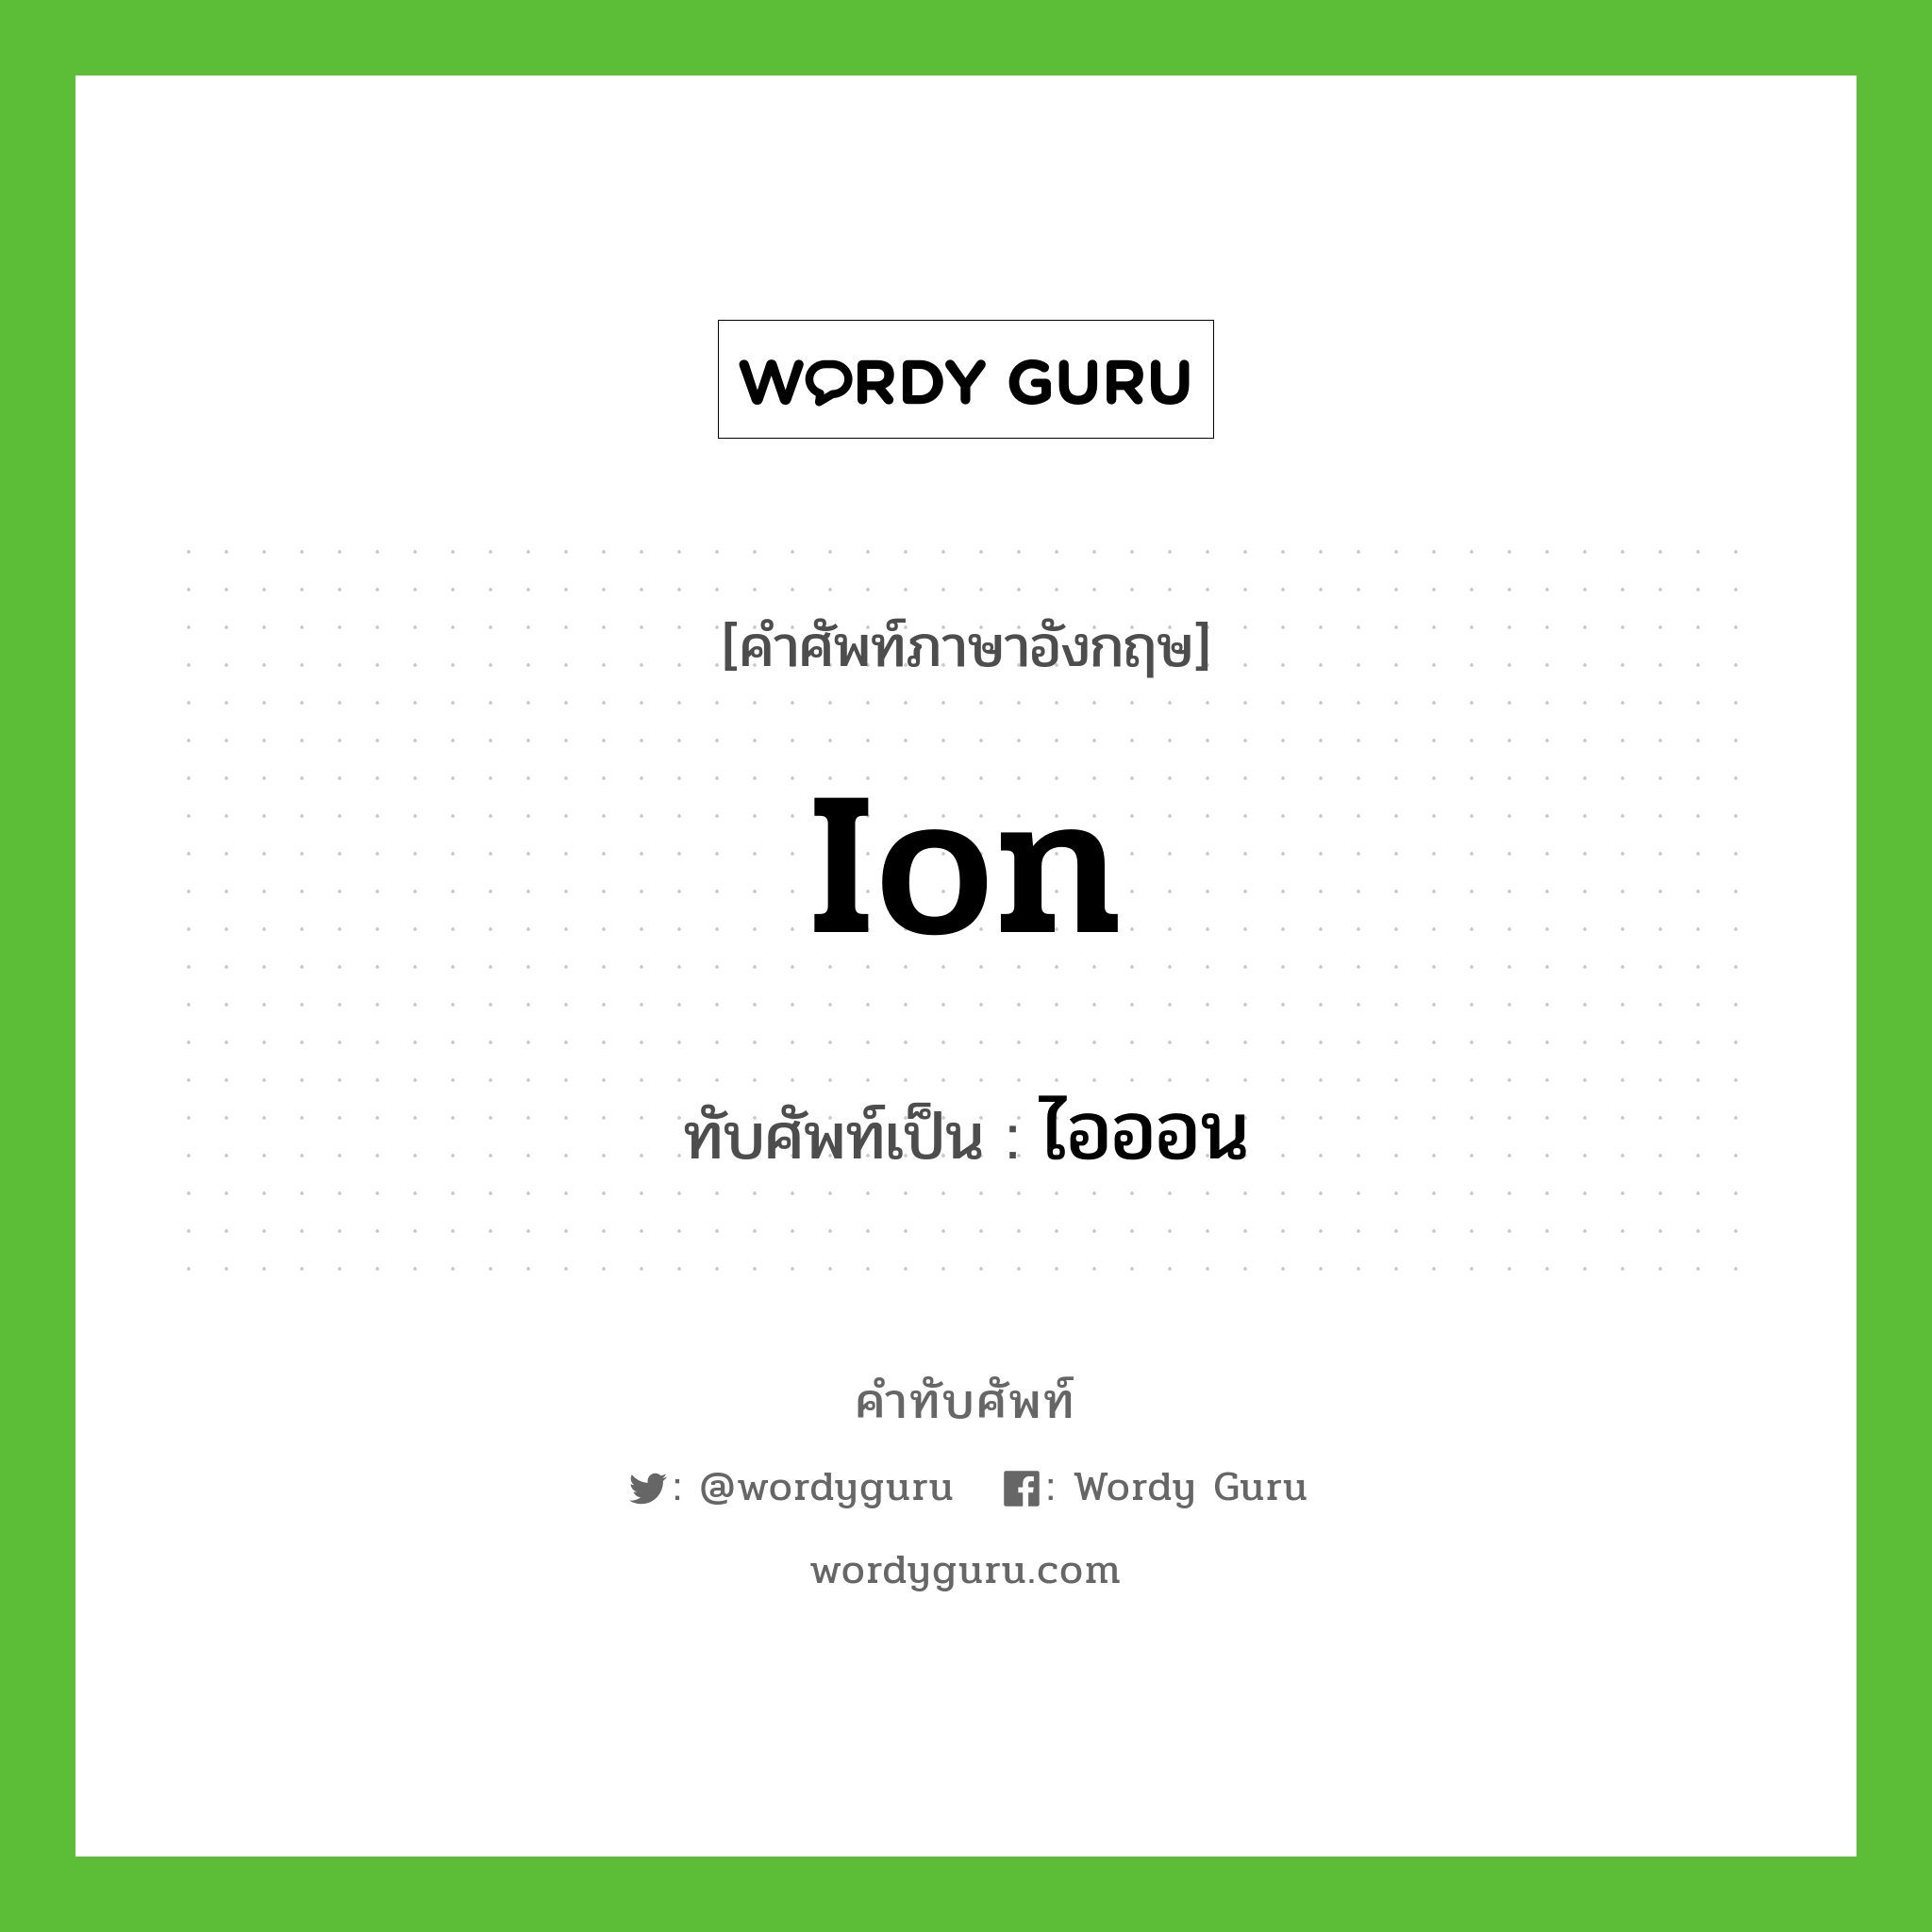 ion เขียนเป็นคำไทยว่าอะไร?, คำศัพท์ภาษาอังกฤษ ion ทับศัพท์เป็น ไอออน